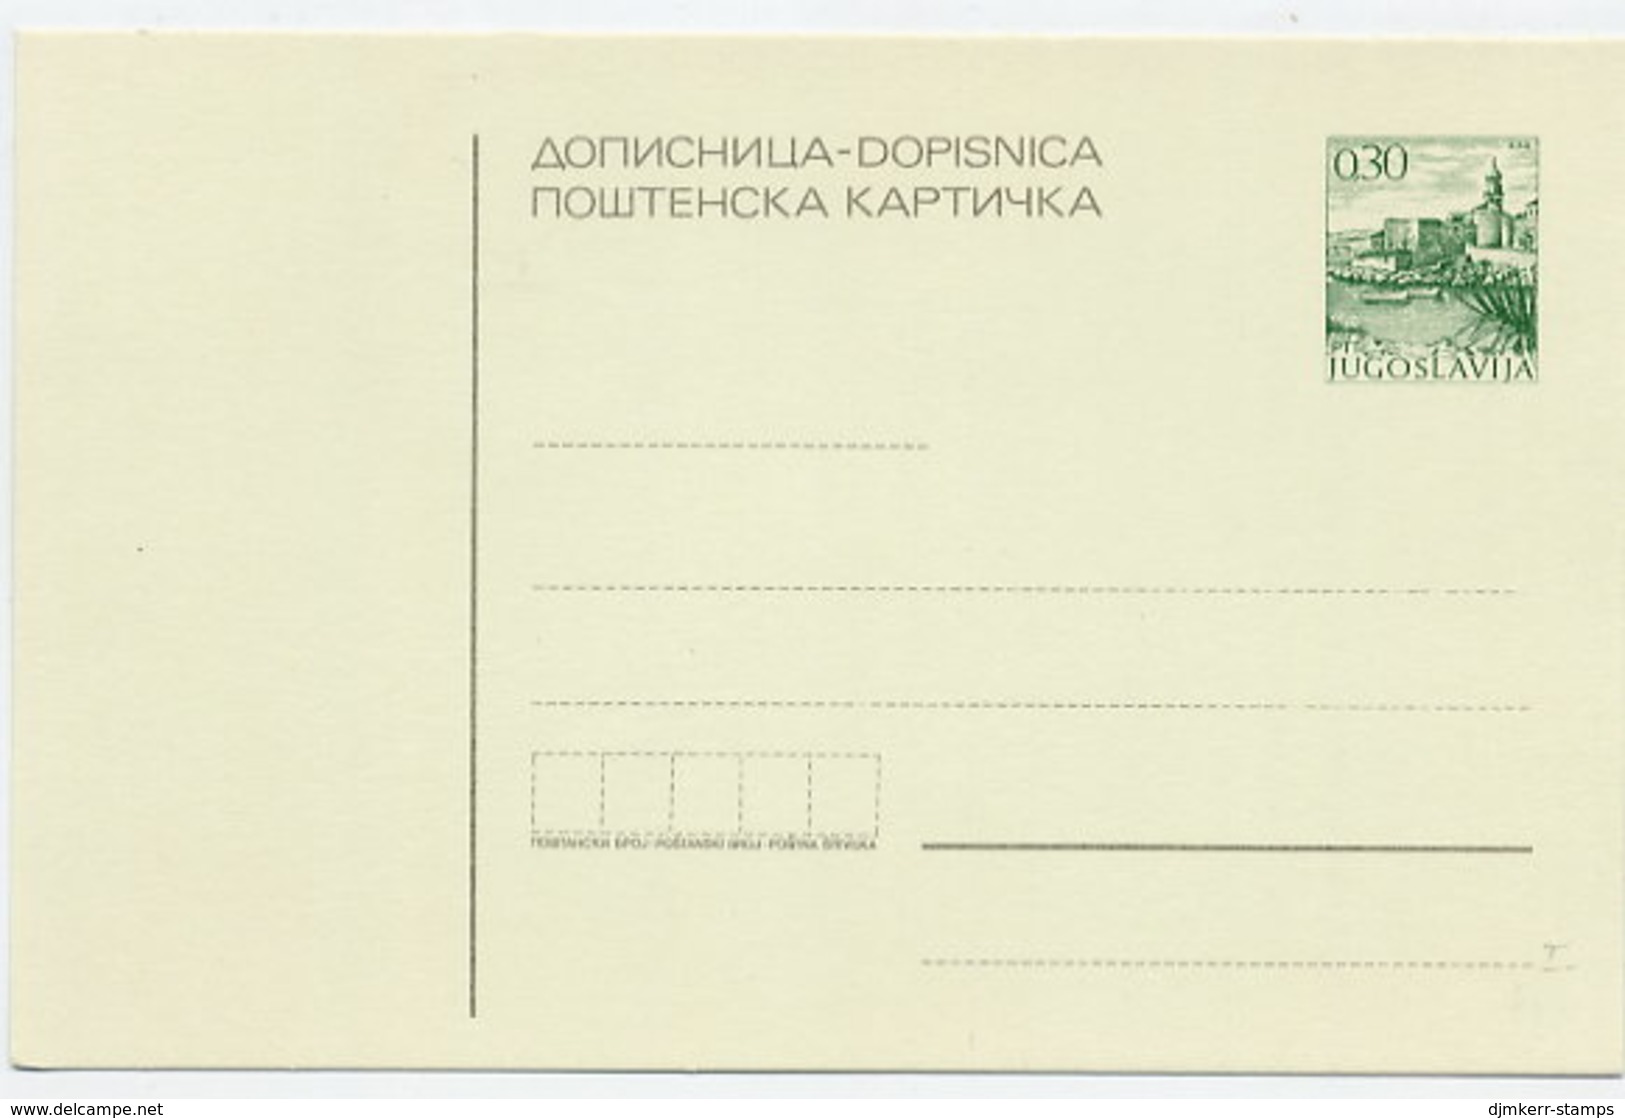 YUGOSLAVIA 1971 Tourism 0.30d Postcard, Unused.  Michel P173 - Ganzsachen